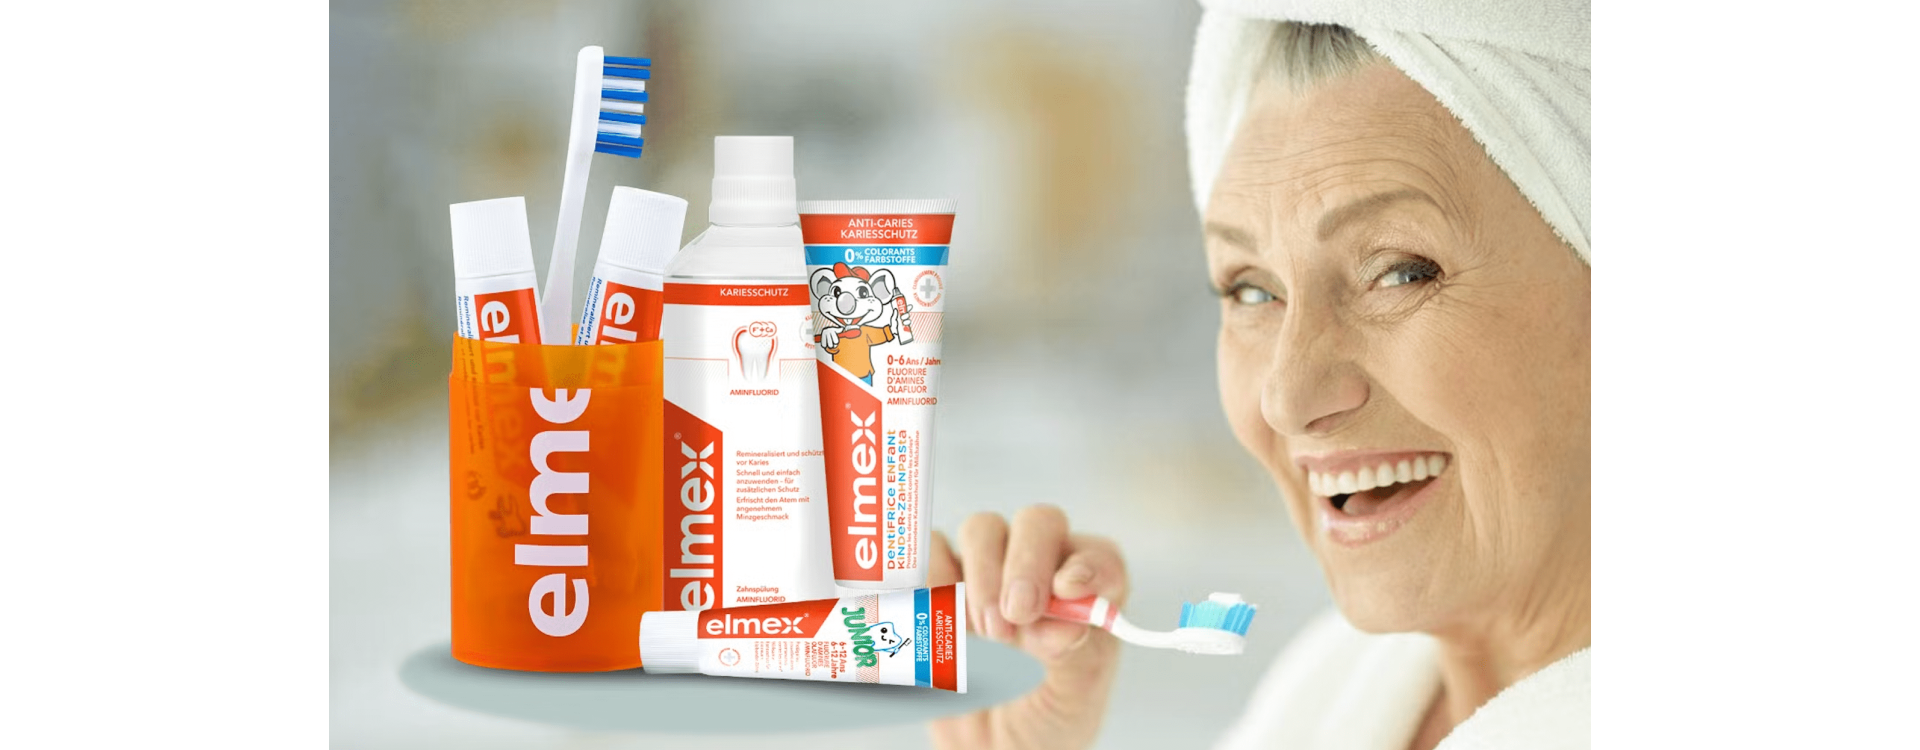 Elmex – die beliebte Marke für Zahnpasta, Zahnbürste & Mundspülung | Kanela